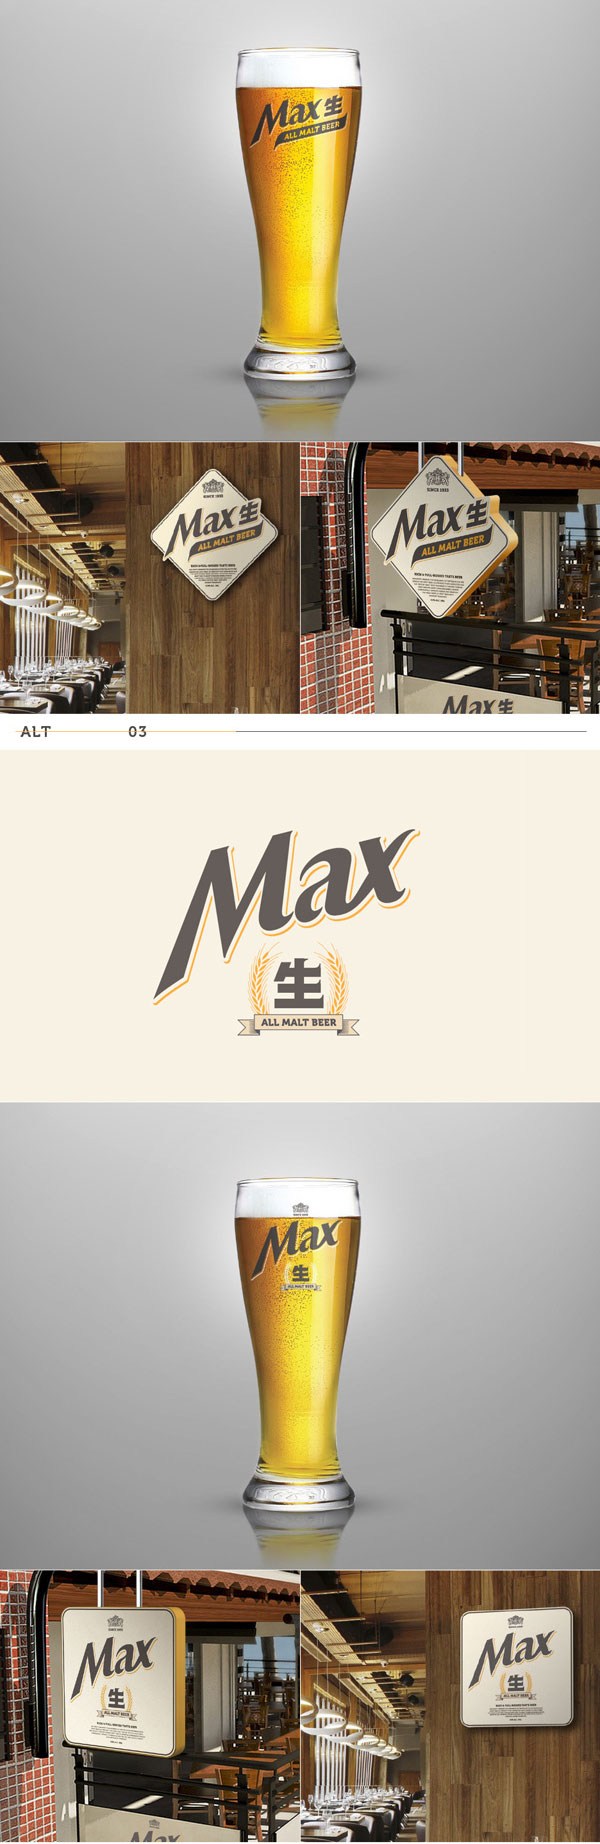 生啤酒品牌设计-韩国品牌HITE MAX